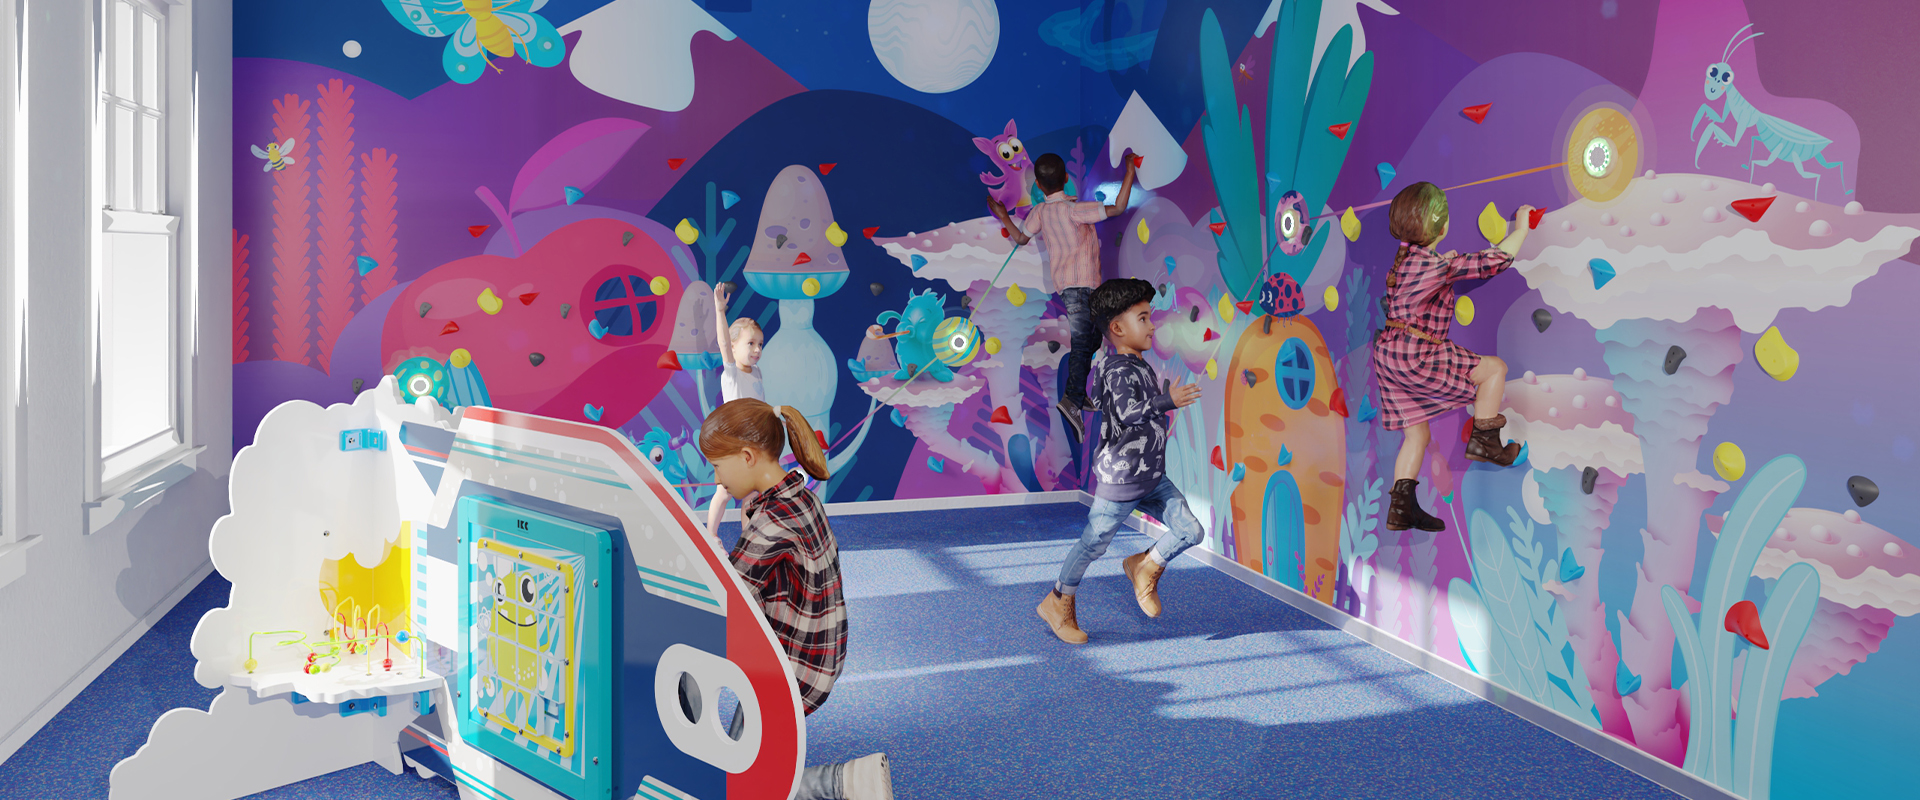 IKC interactieve speelmuur Activity Wall Parcours met ruimte thema en ingebouwde klimmuur met klimgrepen voor kinderen